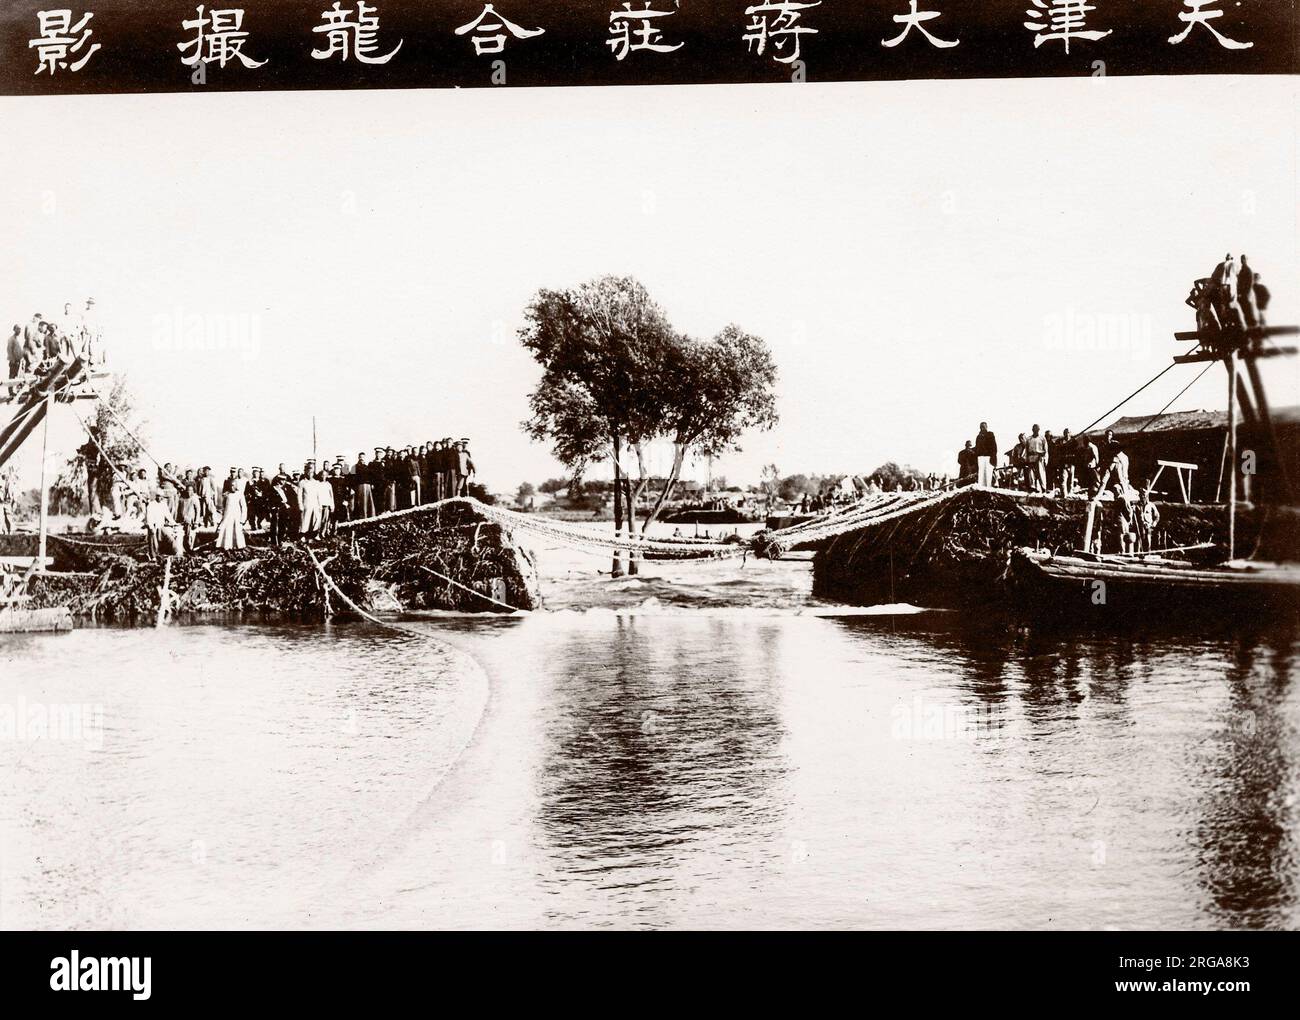 Les marais d'inondation énorme ville chinoise - pensé pour être Tianjin (Tientsin) en 1917. D'importantes inondations est connu pour avoir eu lieu cette année - inondant la plupart de la ville et provoquant à la fois un problème de réfugiés et la maladie. Banque D'Images